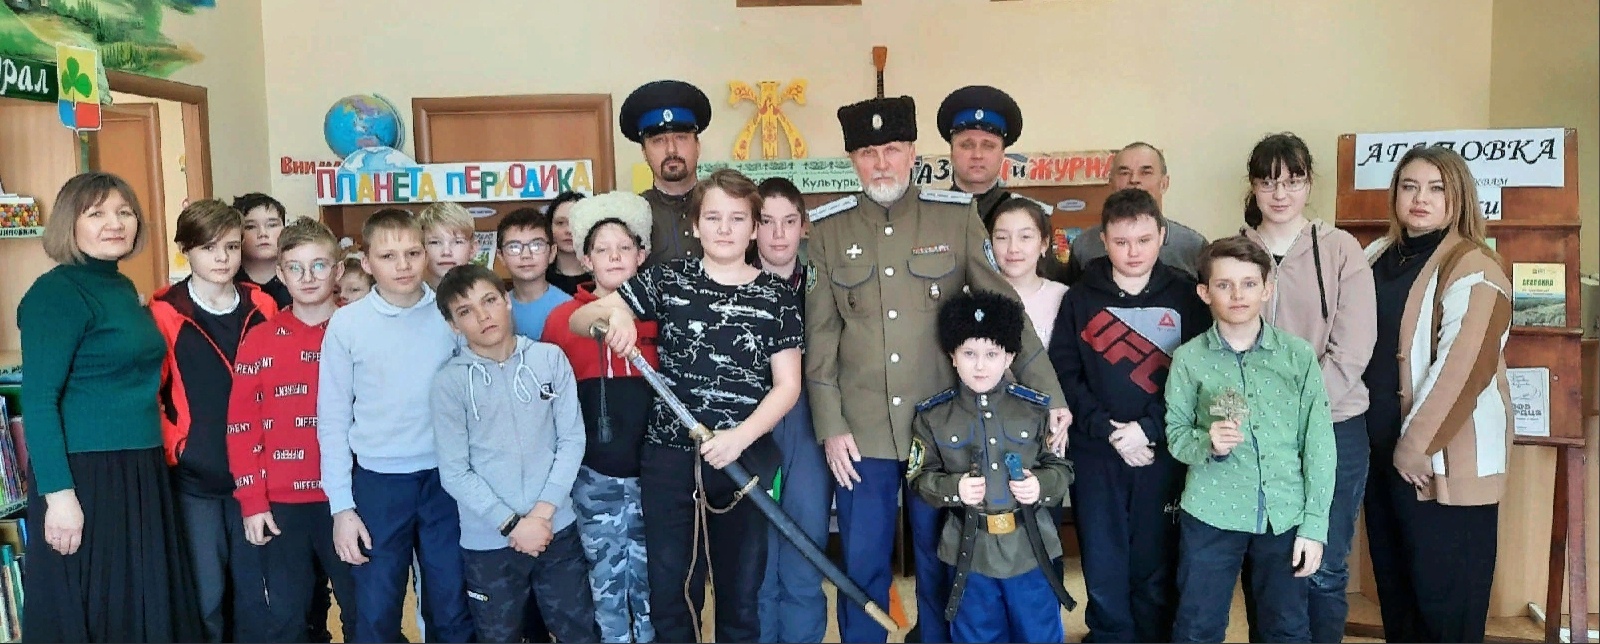 В селе Агаповка Челябинской области дети познакомились с историей и культурой местных казаков